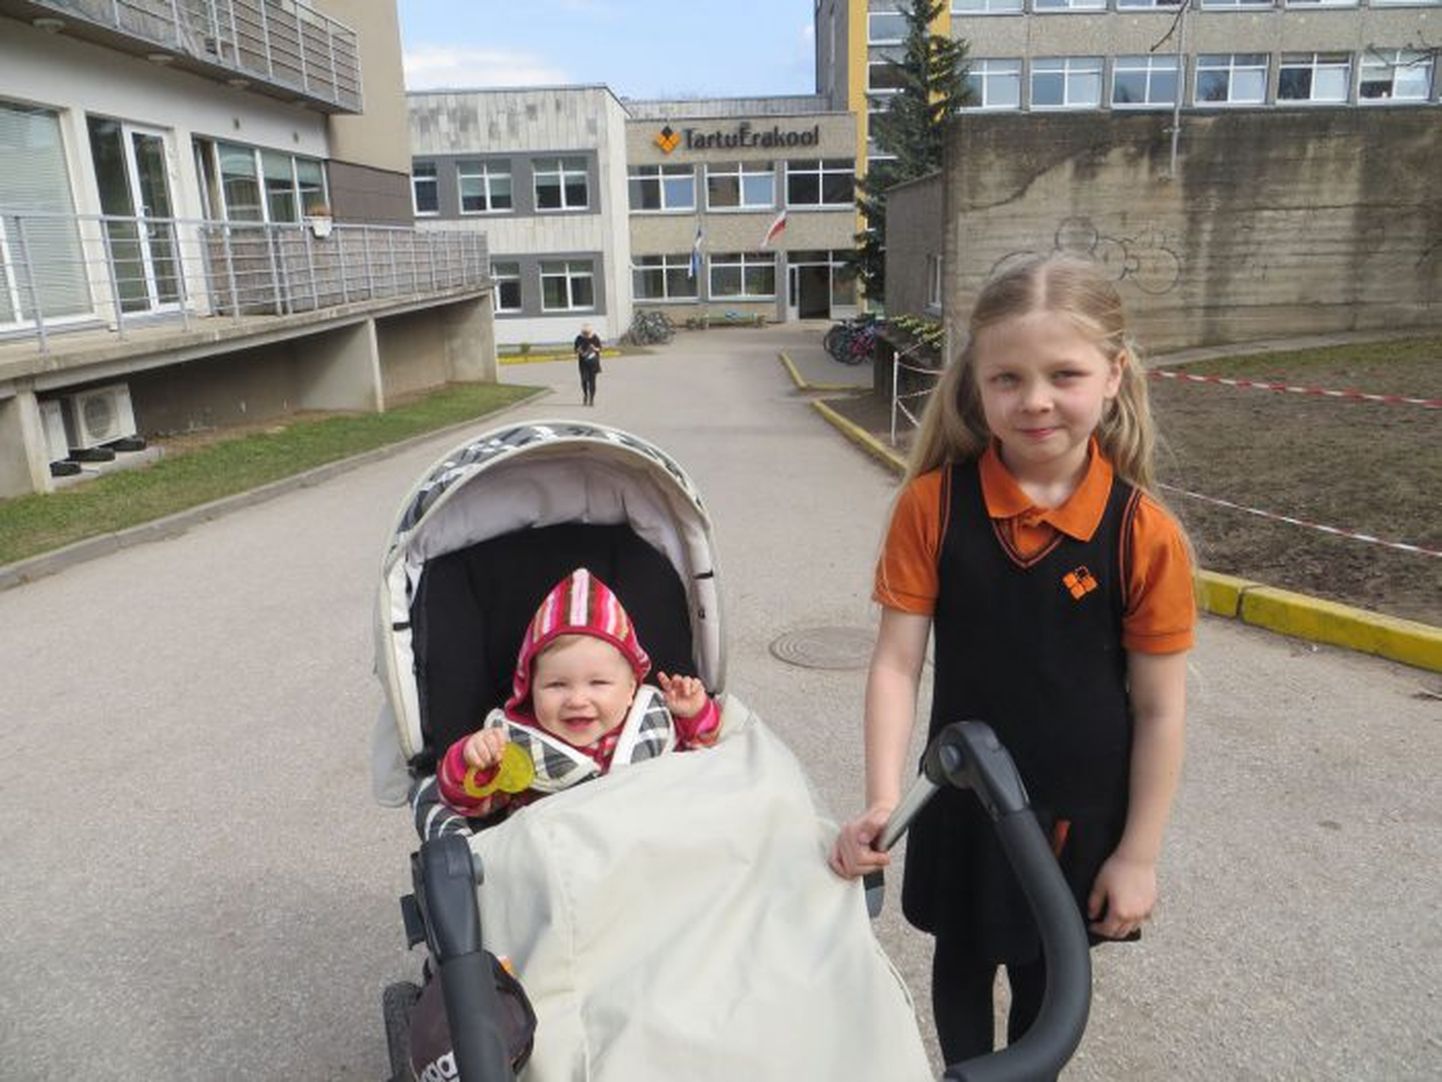 Kolme aasta eest koos perega Ameerikast Eestisse naasnud Eliisbet Org astus vanema venna jälgedes õppima Tartu erakooli. Koolipäeva lõpus ootab teda väike õde Loviise.